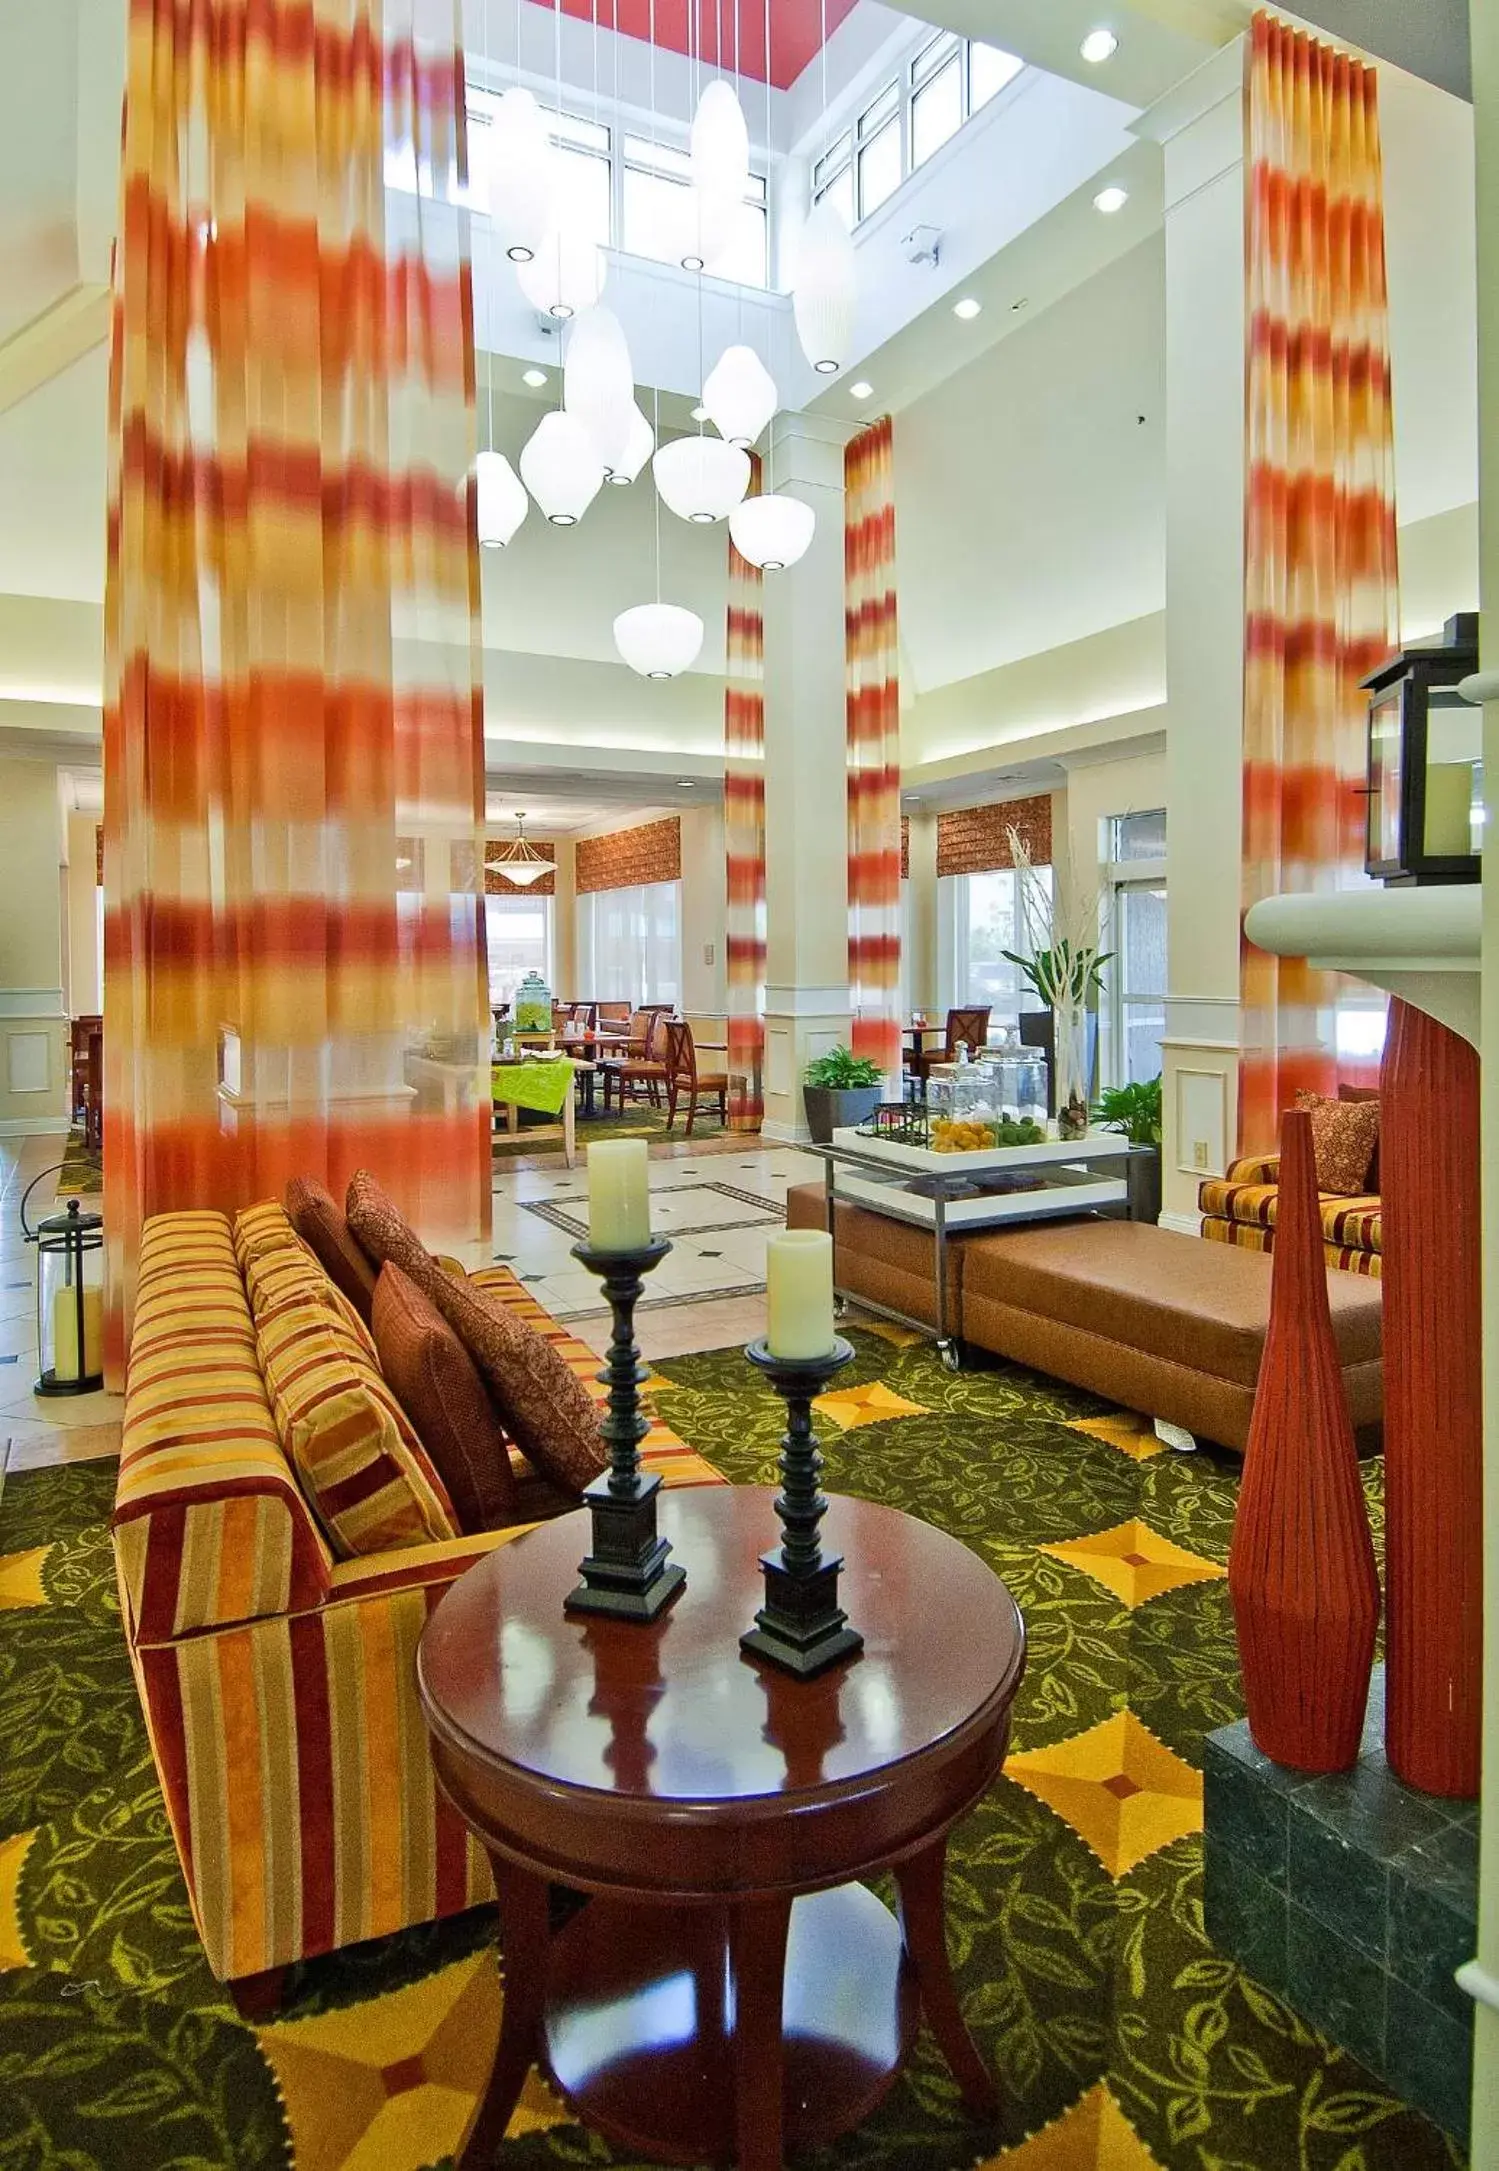 Lobby or reception, Lobby/Reception in Hilton Garden Inn Jackson/Pearl